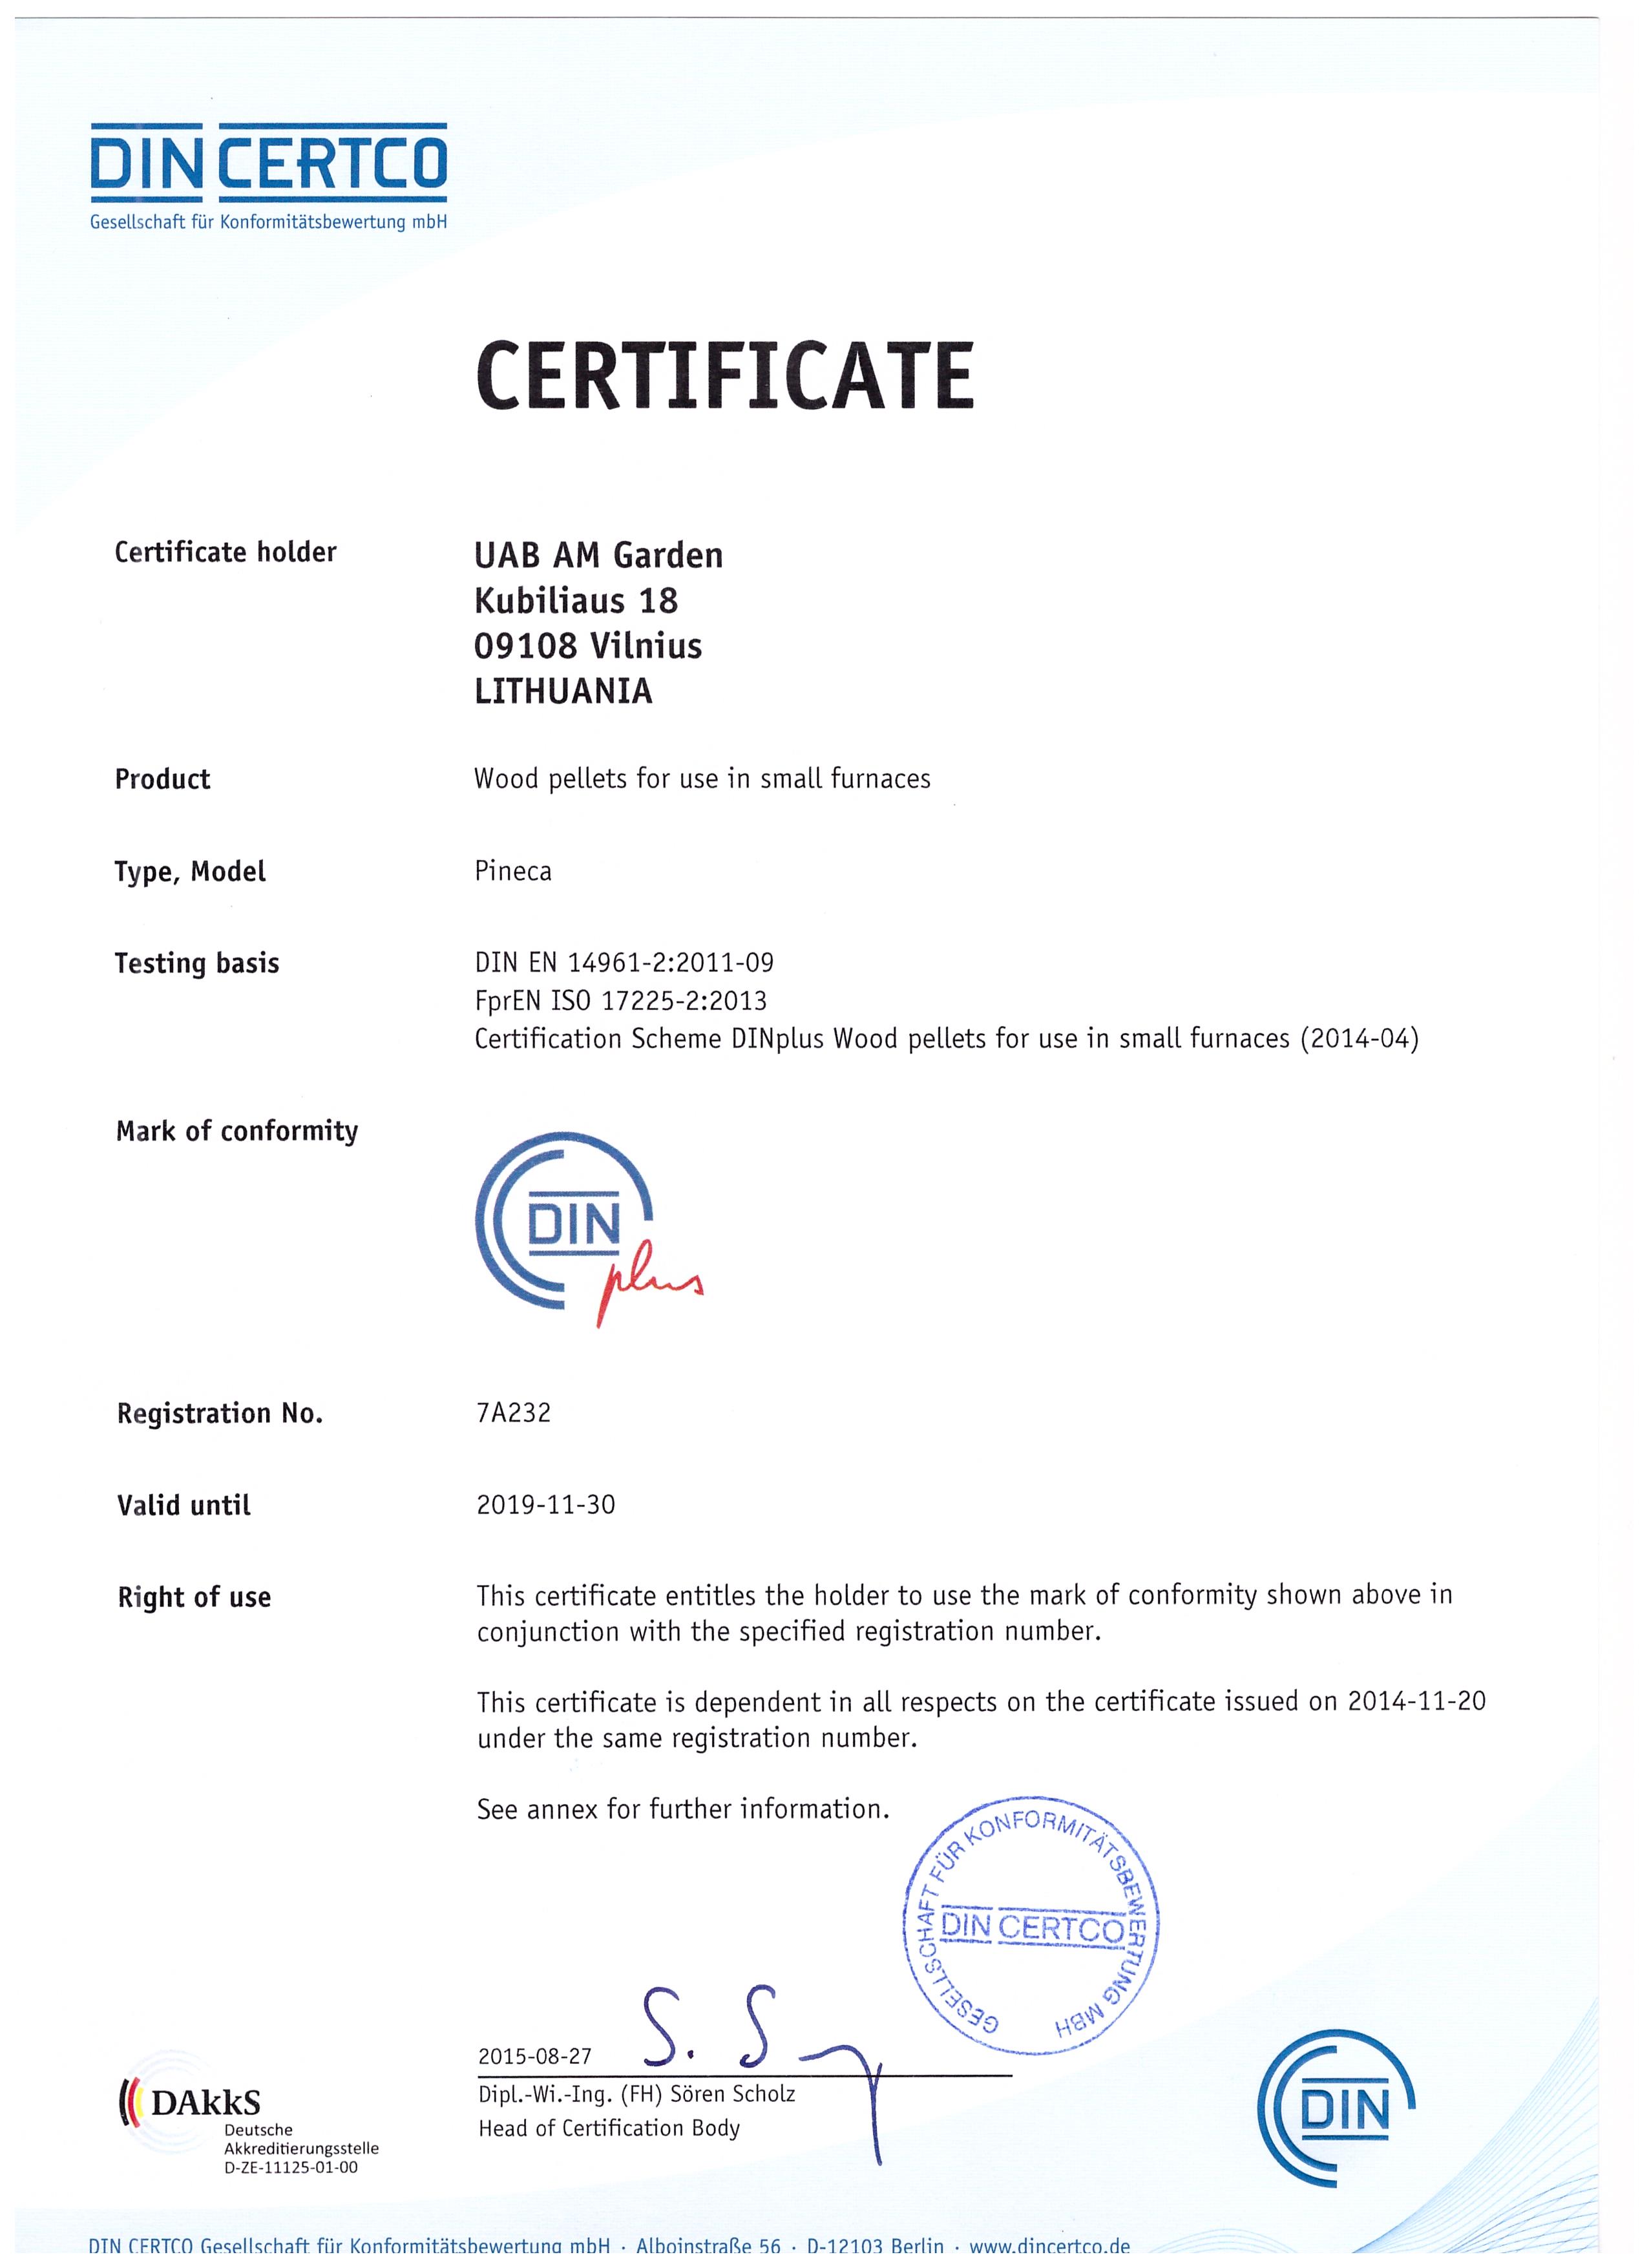 DIN PLUS Certificate